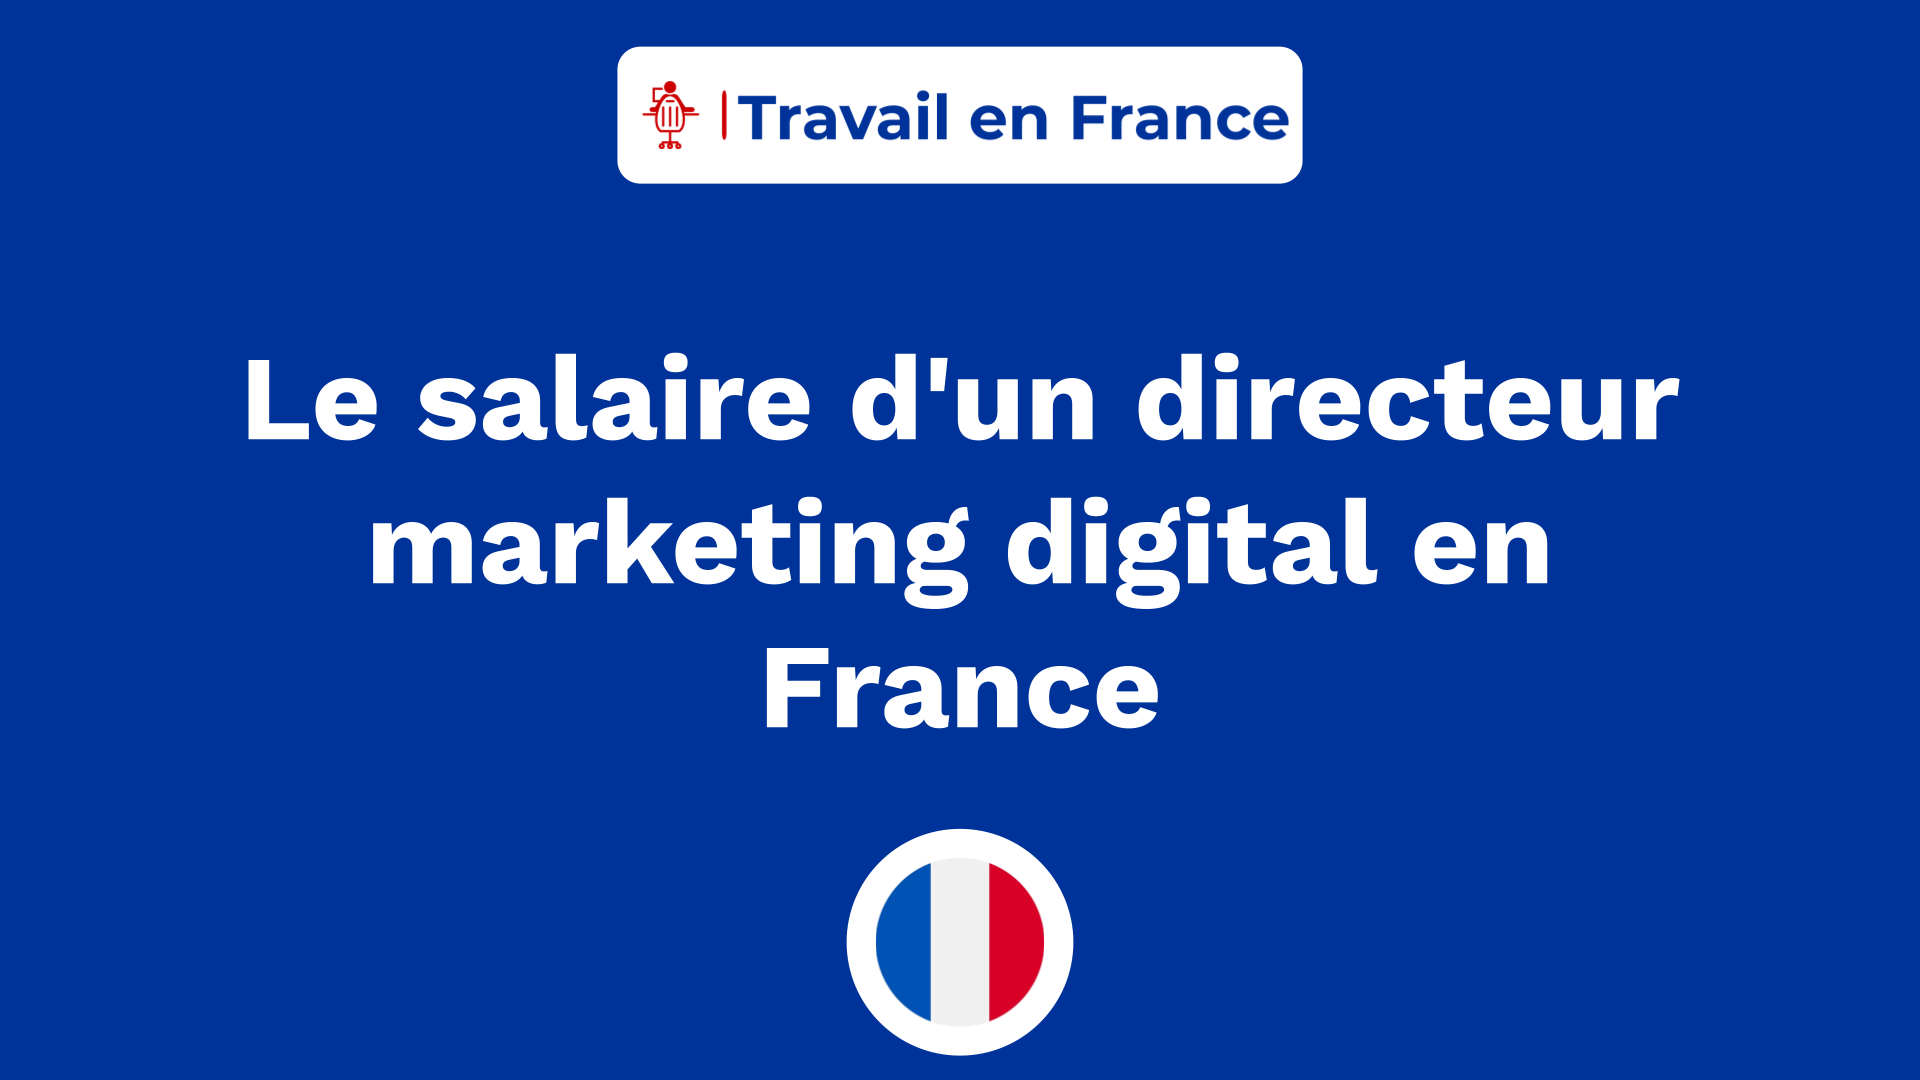 Le salaire d'un directeur marketing digital en France